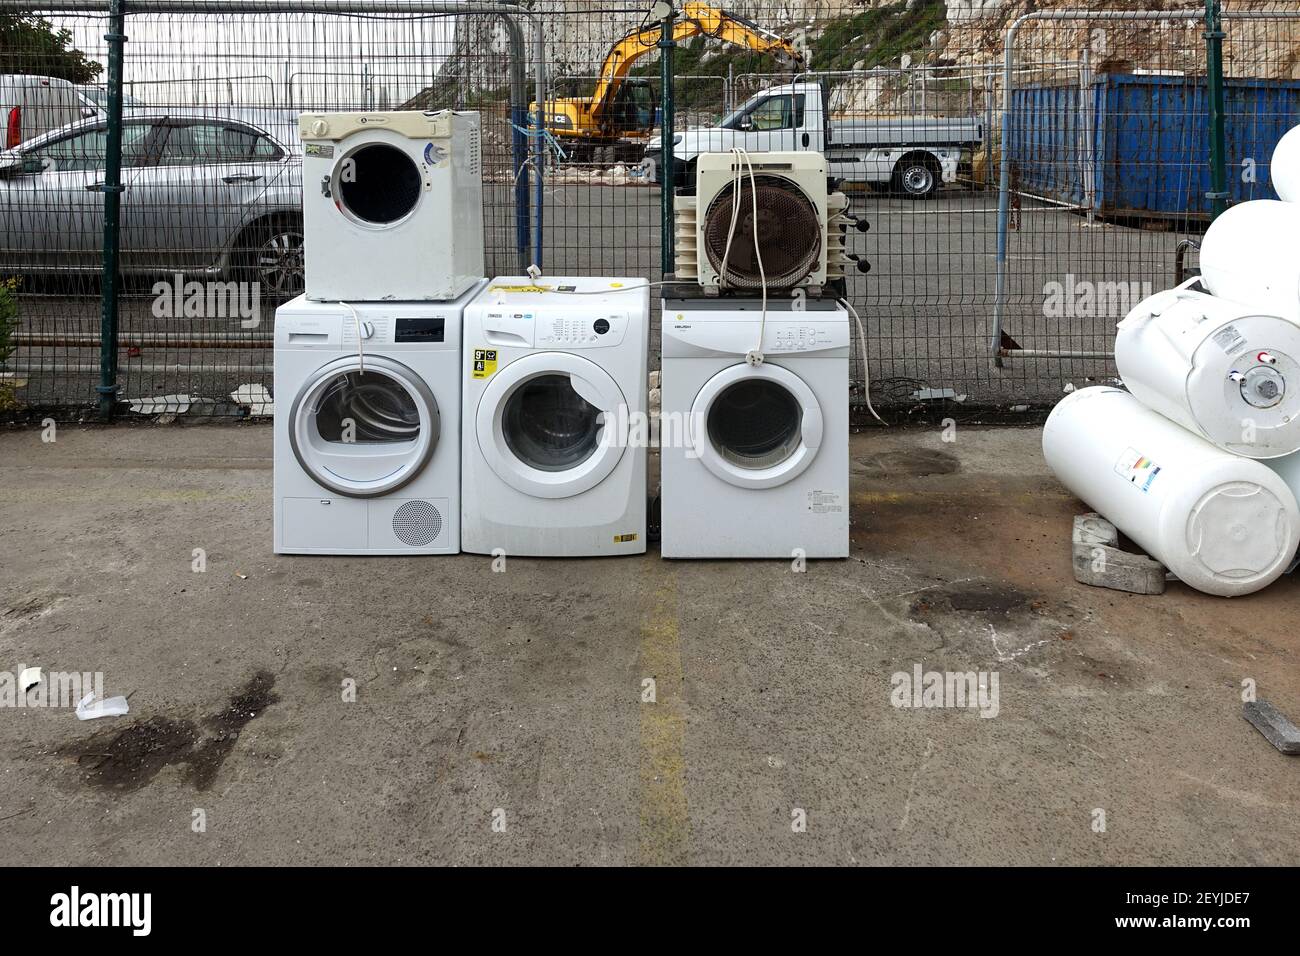 Gibraltar 09 novembre 2020 : il y a beaucoup de chauffe-eau et de machines à laver cassés et vieux au dépotoir local Banque D'Images